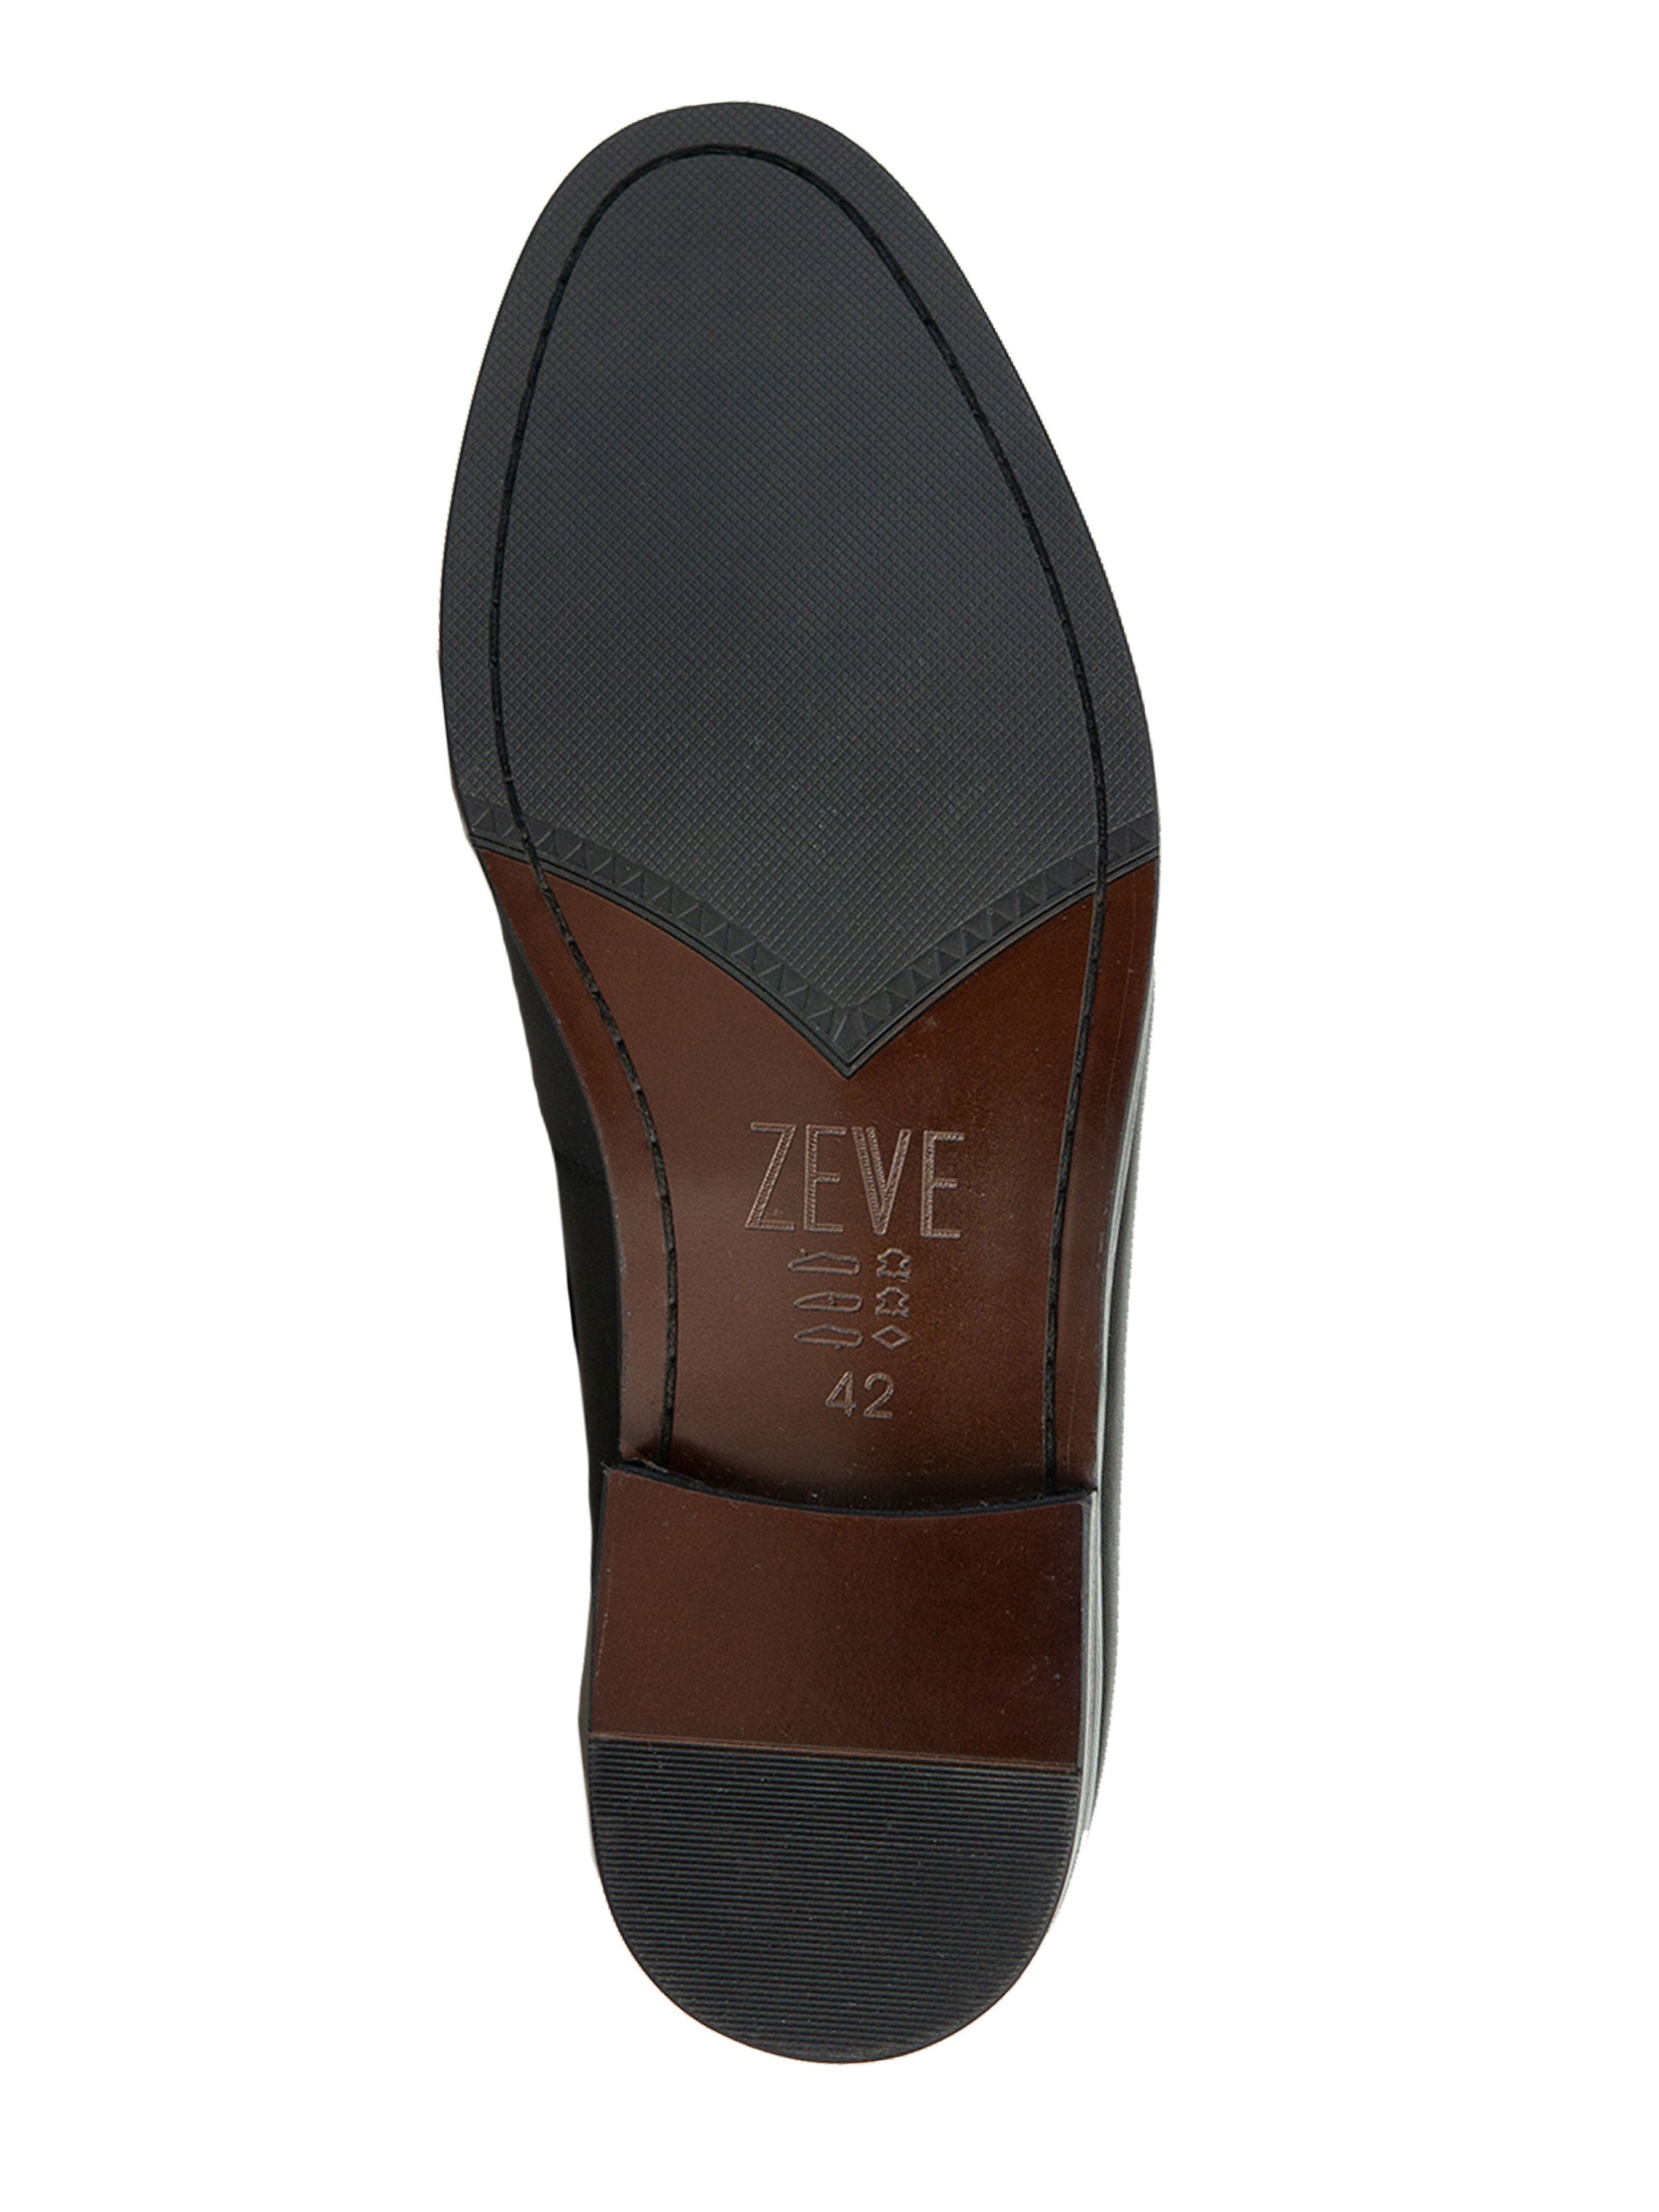 Tassel Moccasin Loafer - Solid Black - Zeve Shoes